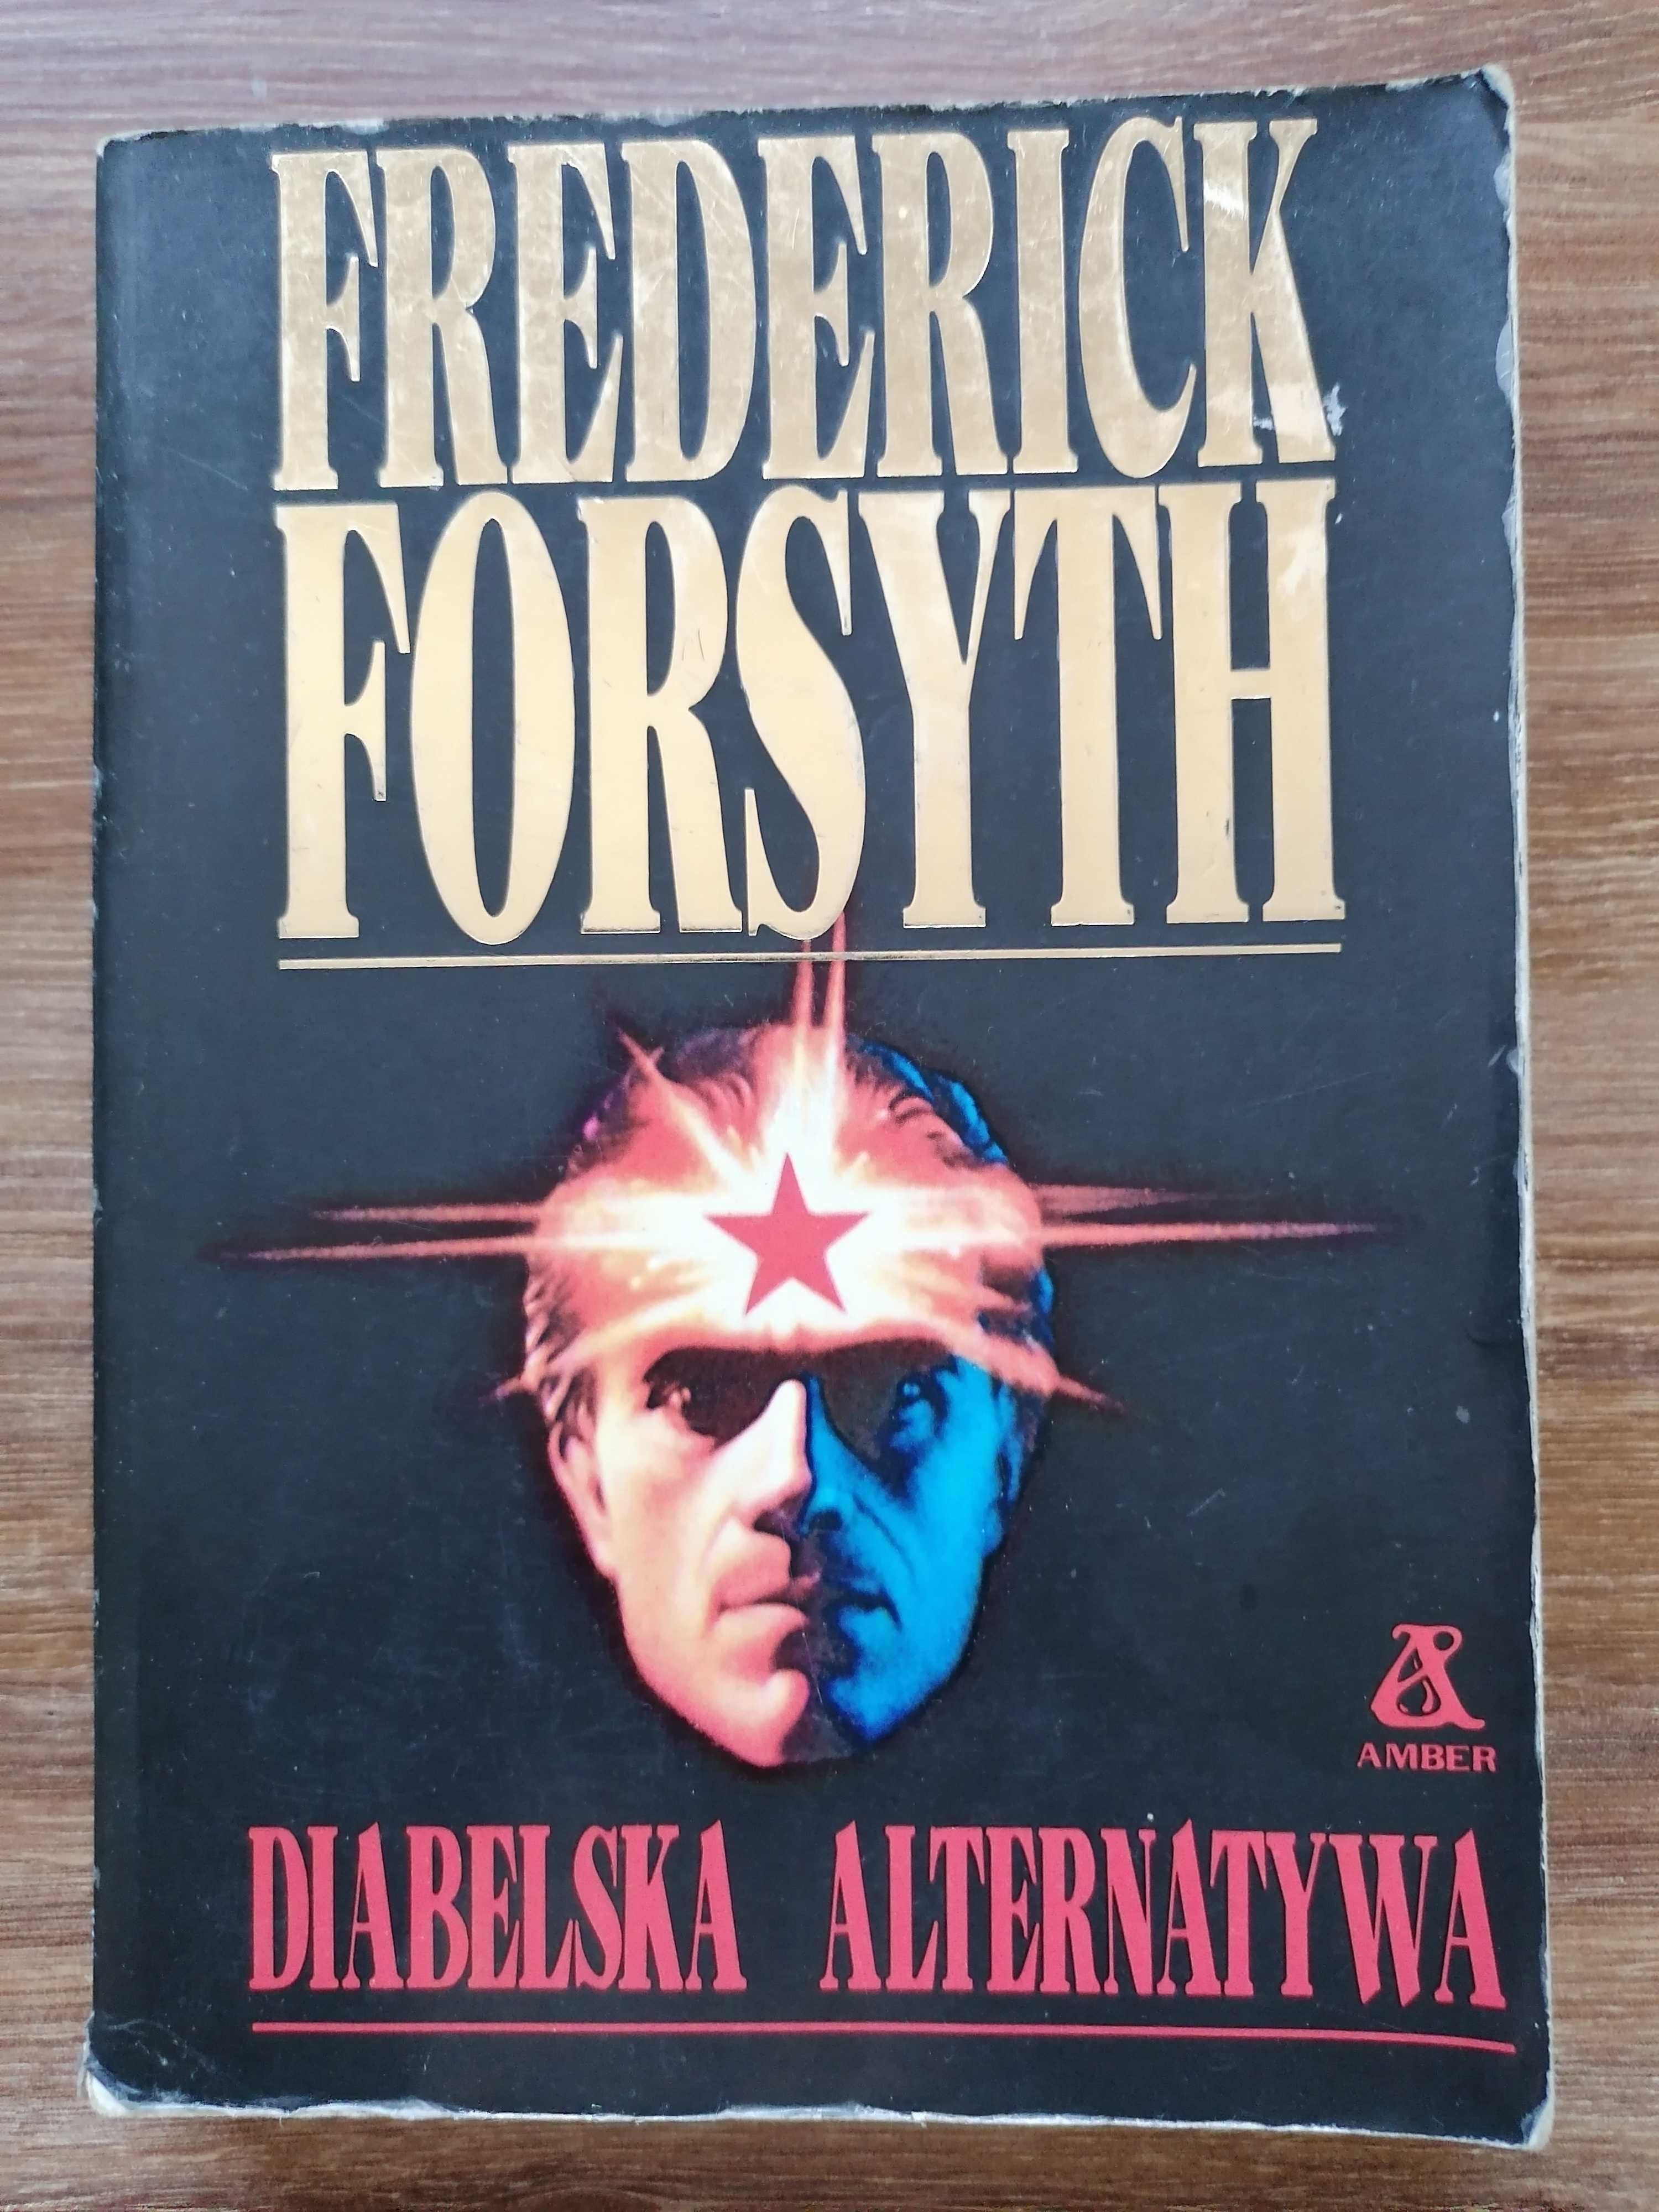 Frederick Forsyth - "Diabelska alternatywa"